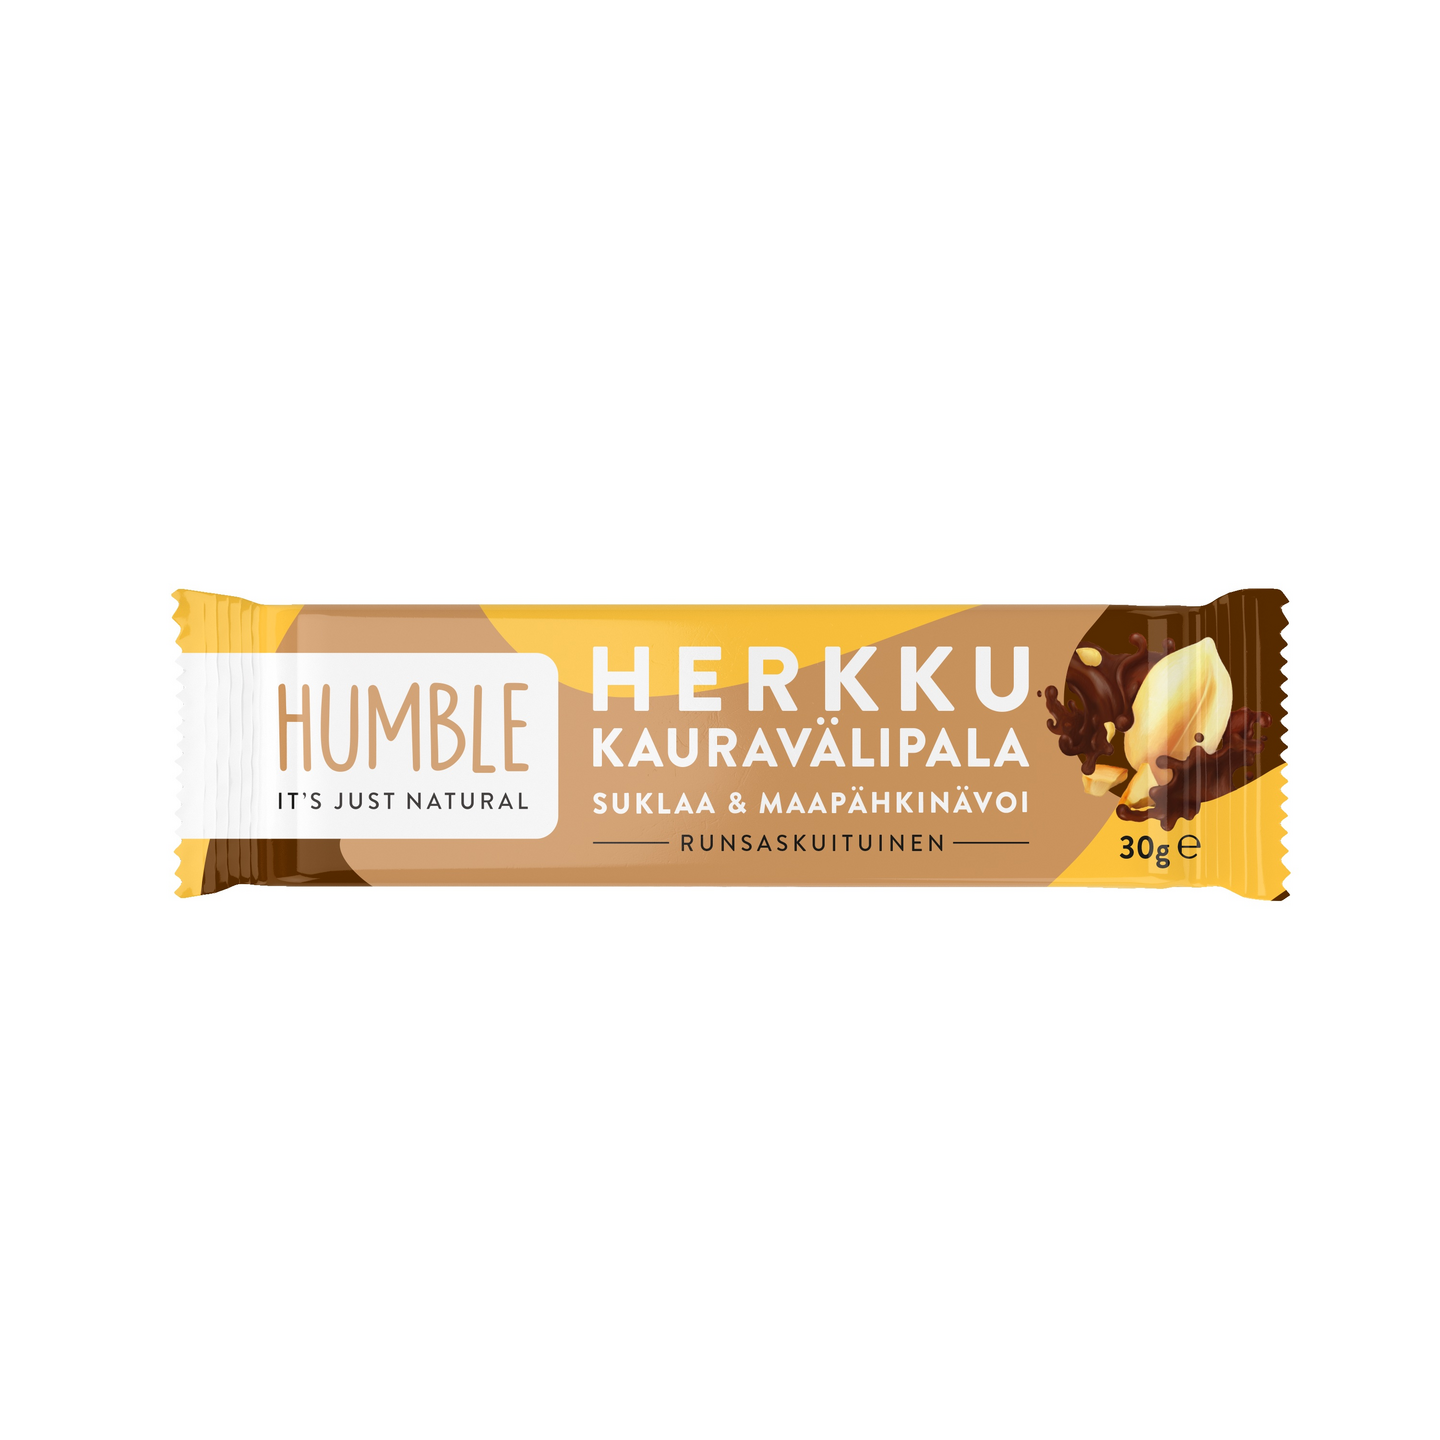 Humble kaurapatukka 30g maapähkinä suklaa